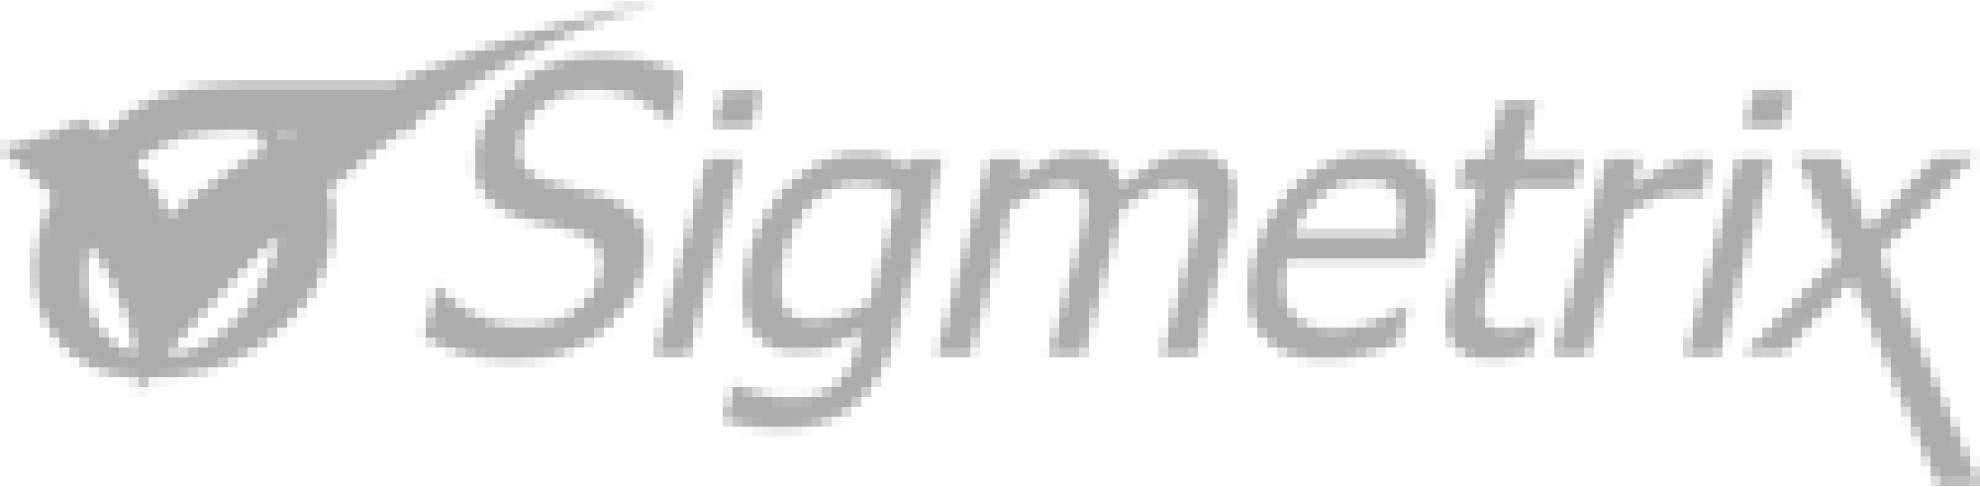 Sigmetrix_logo 1